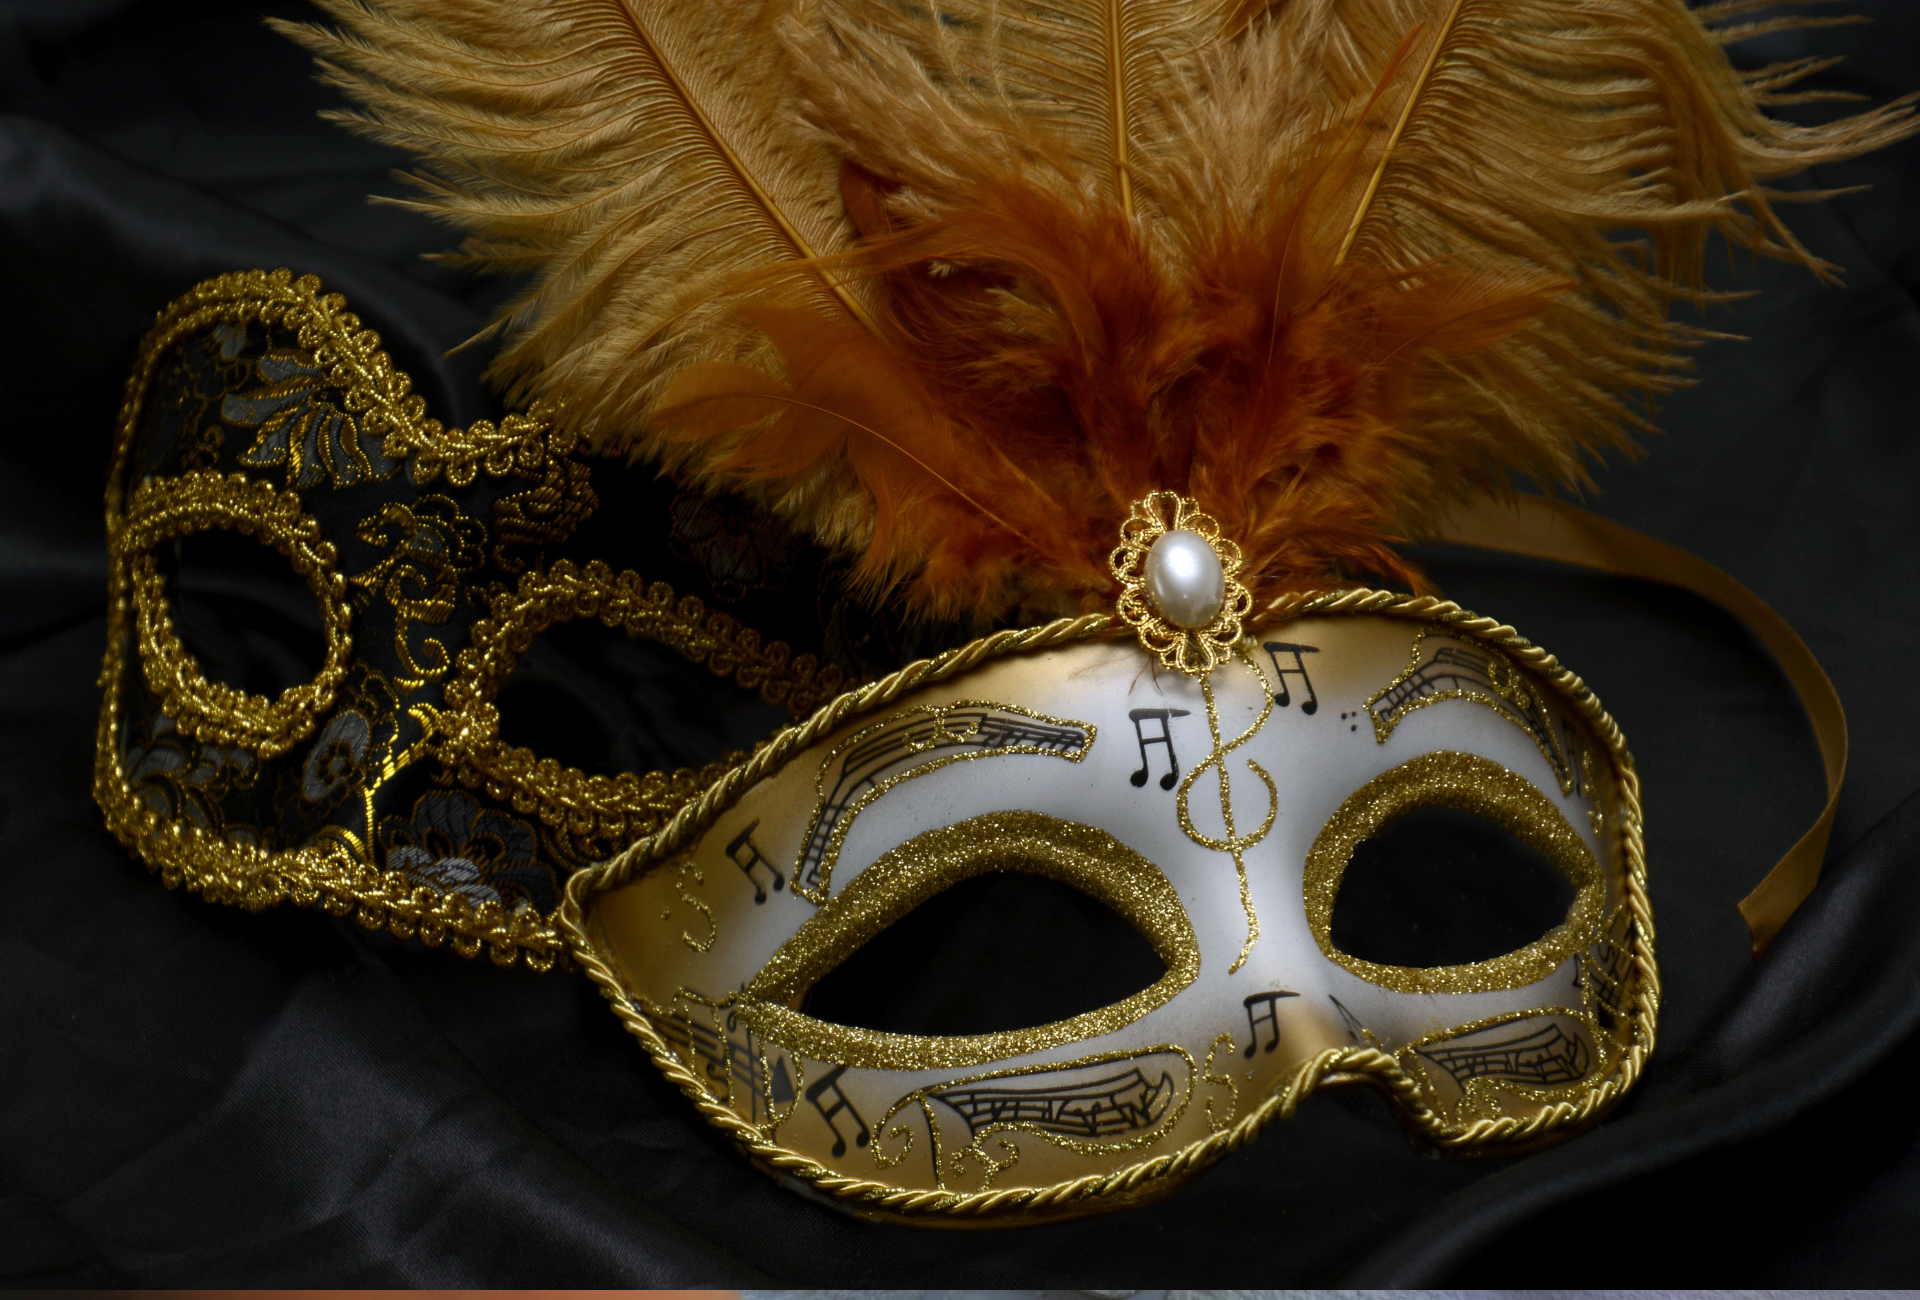 カーニバルのマスク